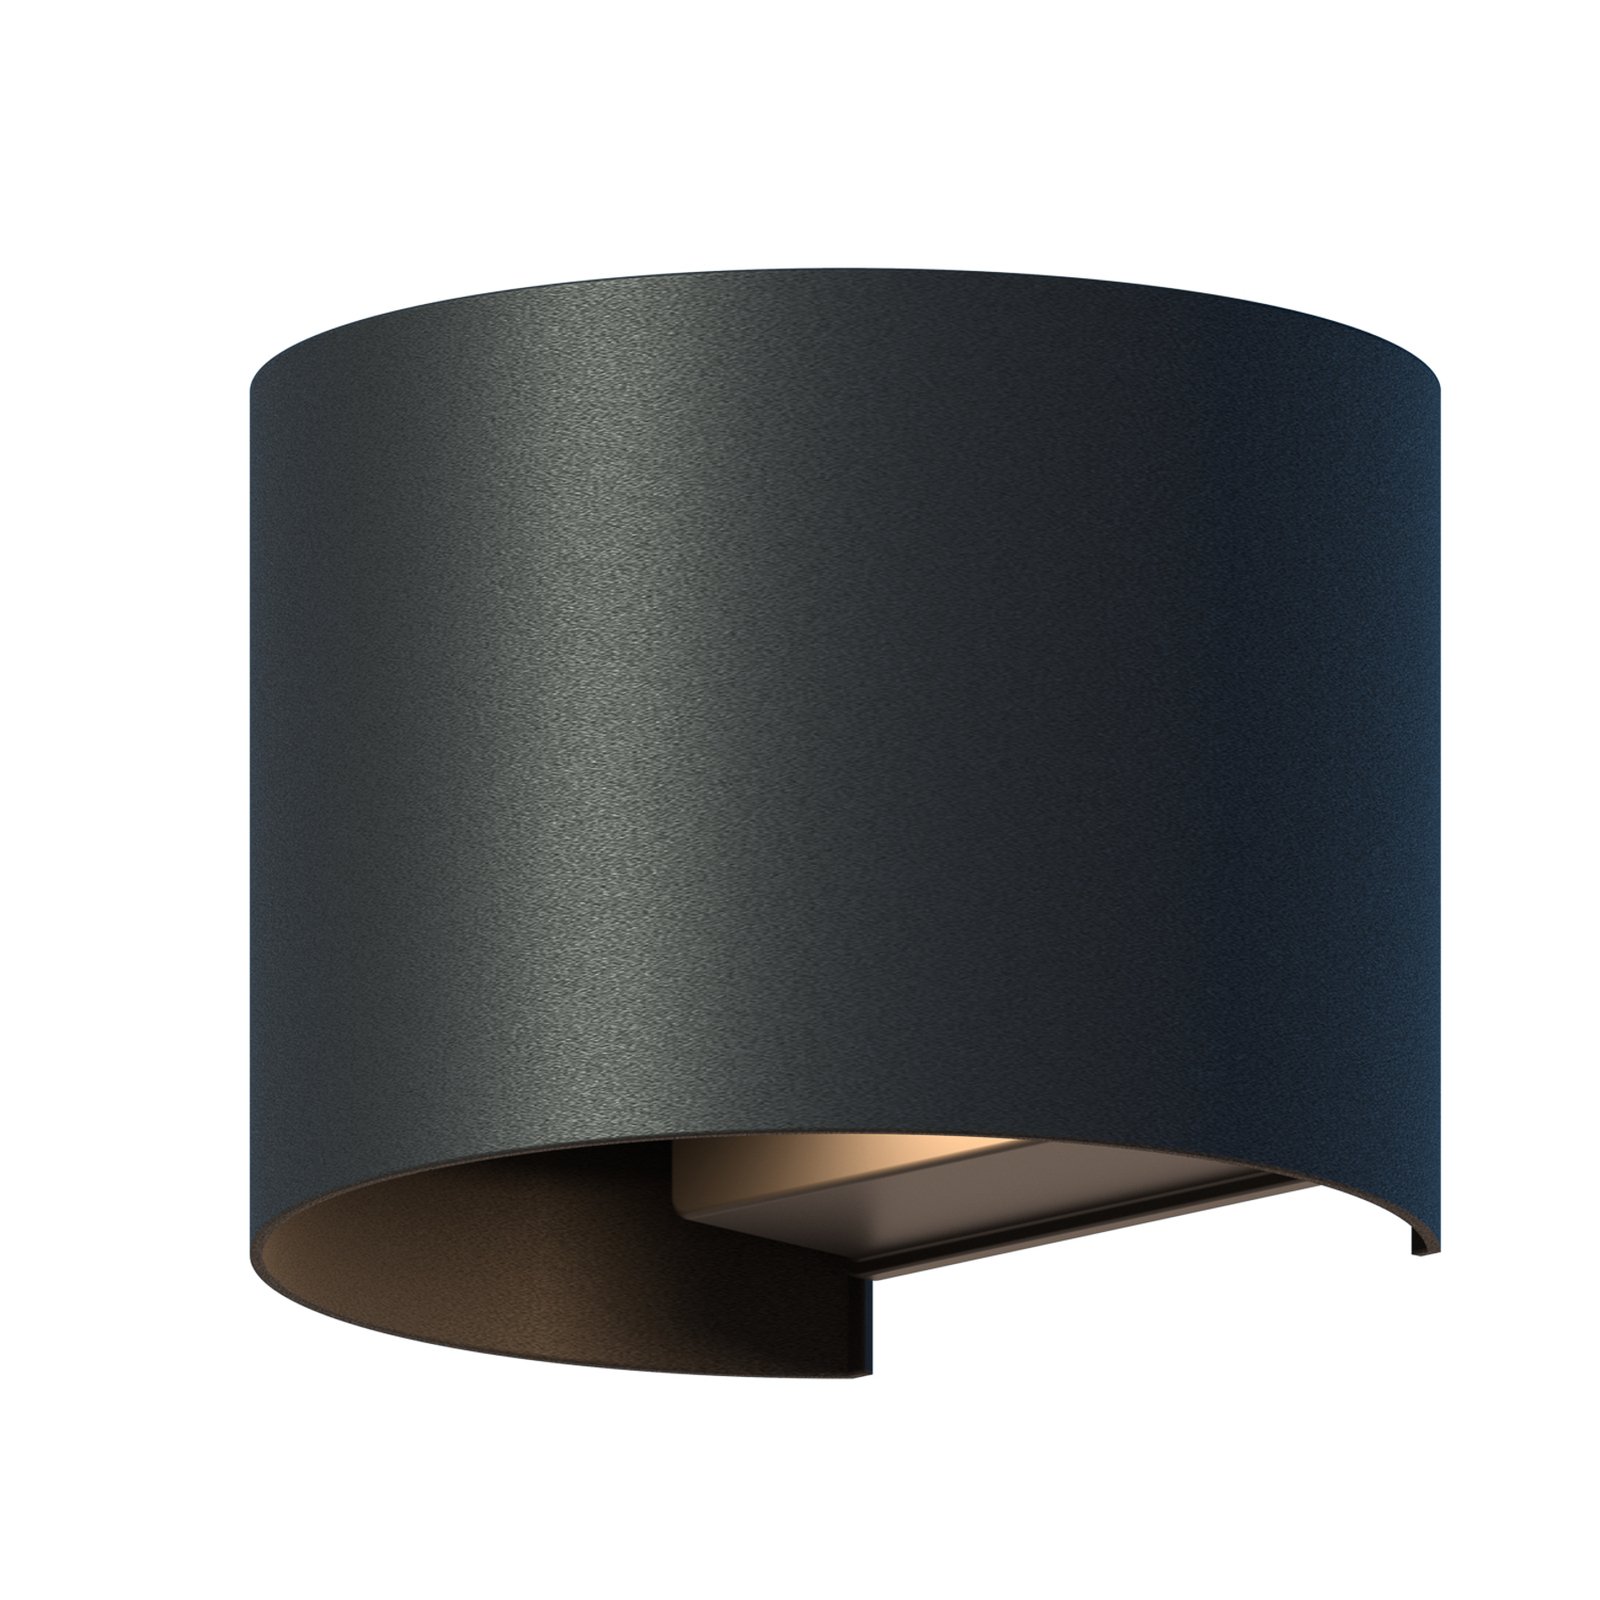 Calex LED-Außenwandlampe Oval, up/down, Höhe 10 cm, schwarz